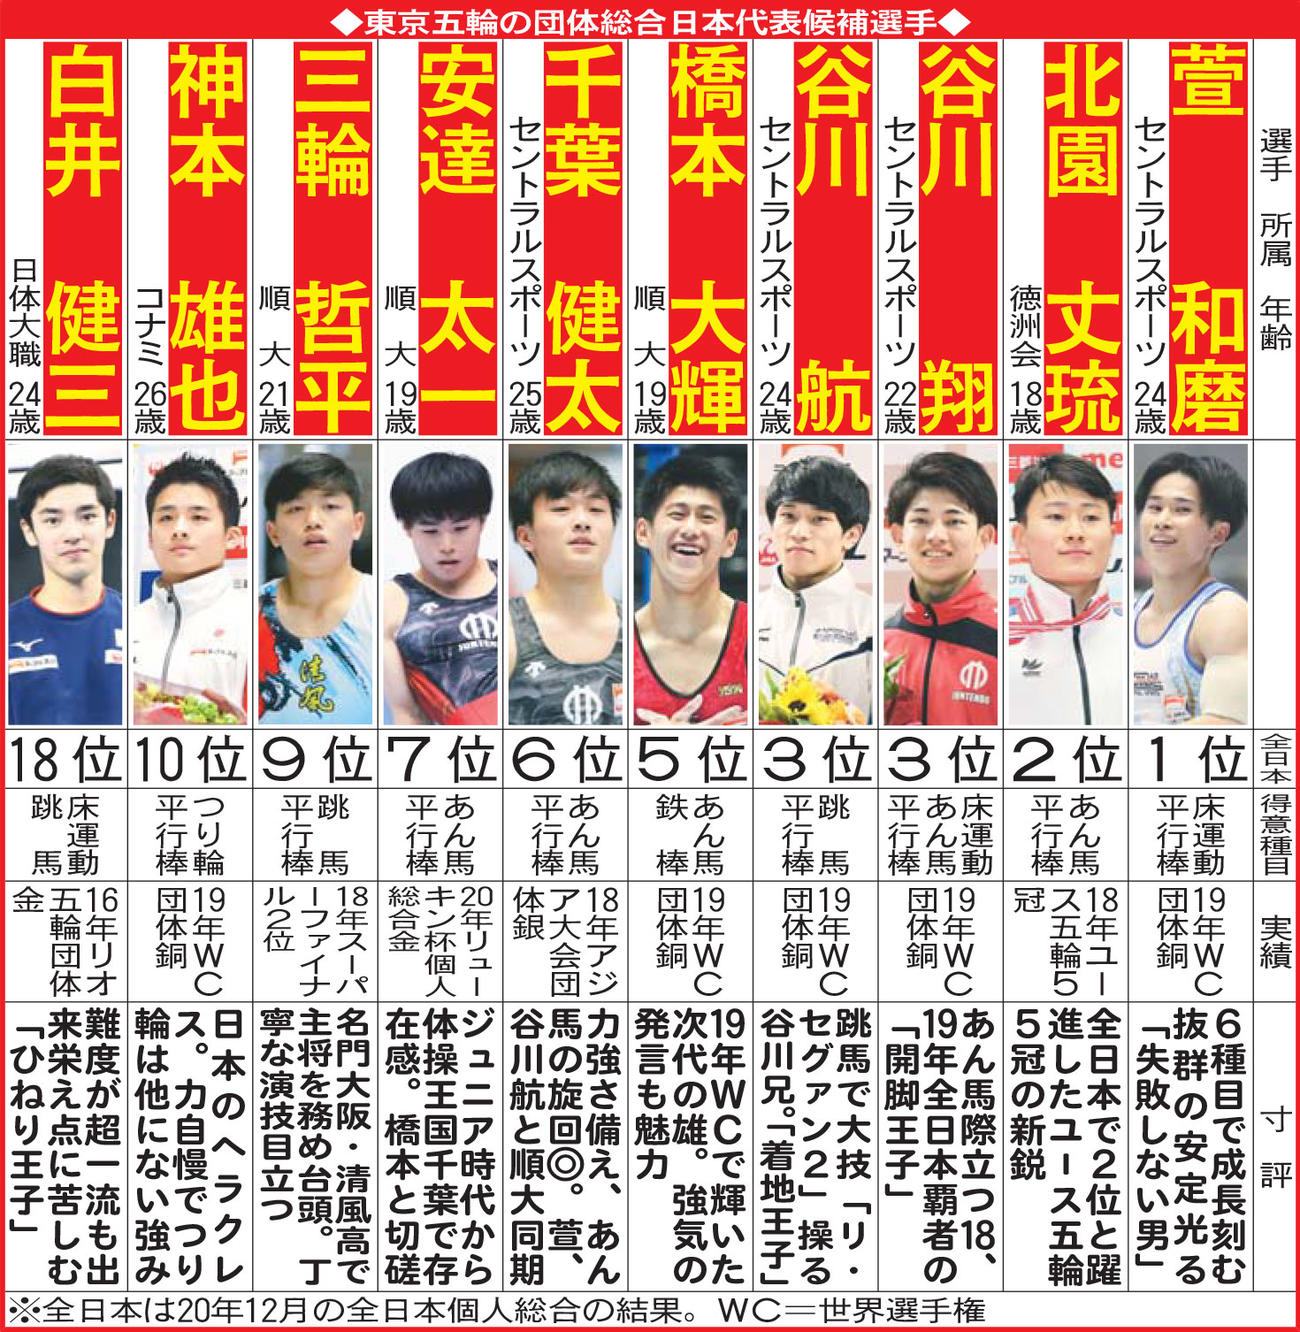 東京五輪の団体総合日本代表候補選手